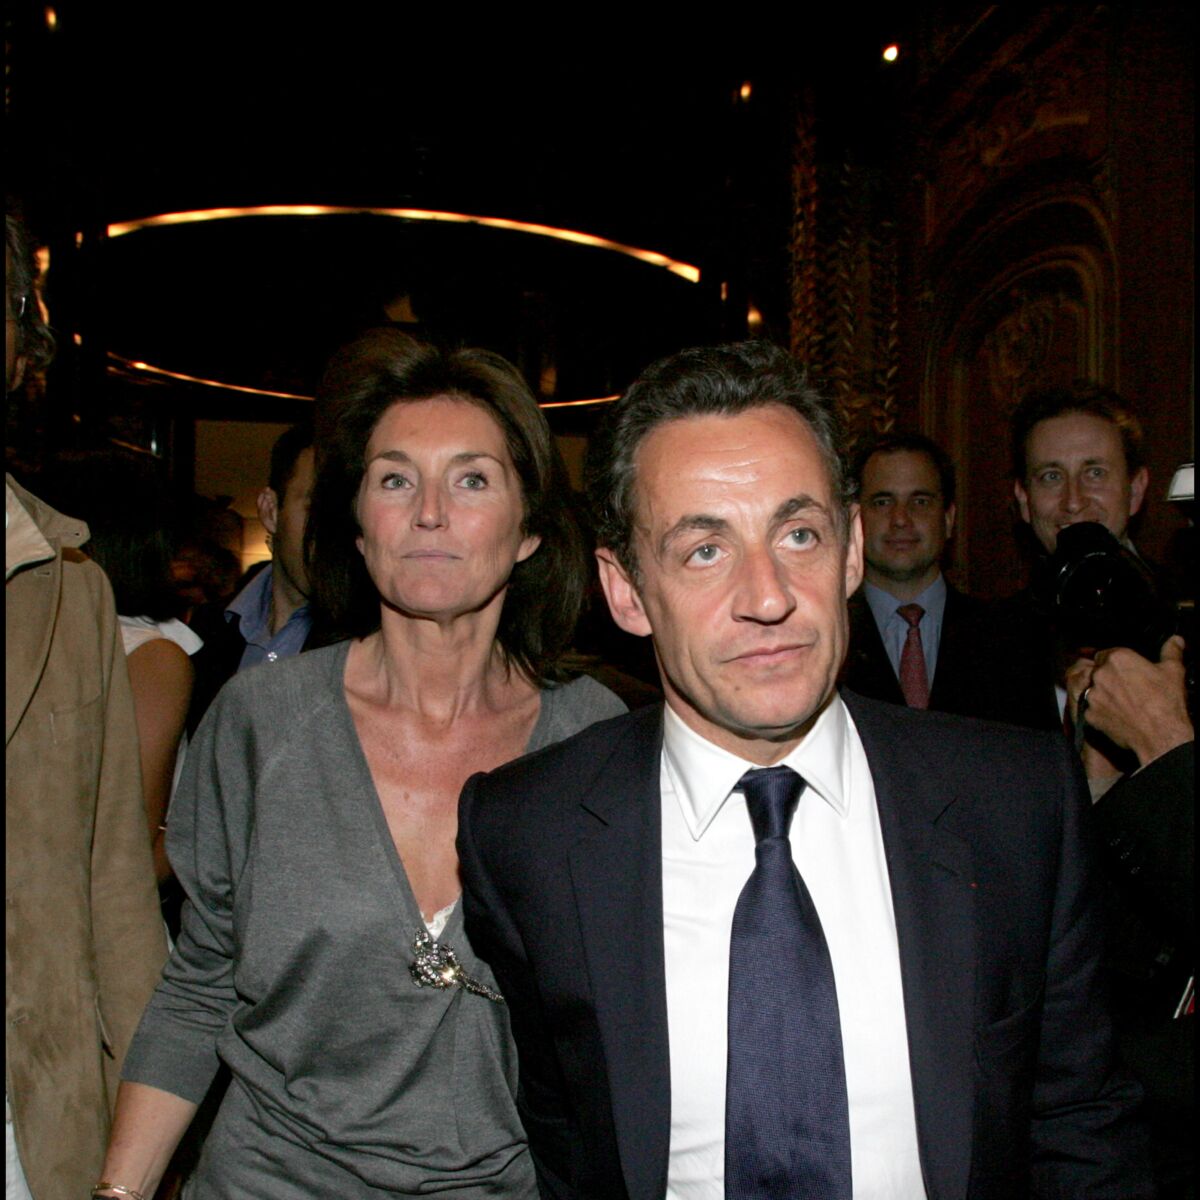 Nicolas Sarkozy et Carla Bruni rendent visite à Cécilia à New York - Marie Claire